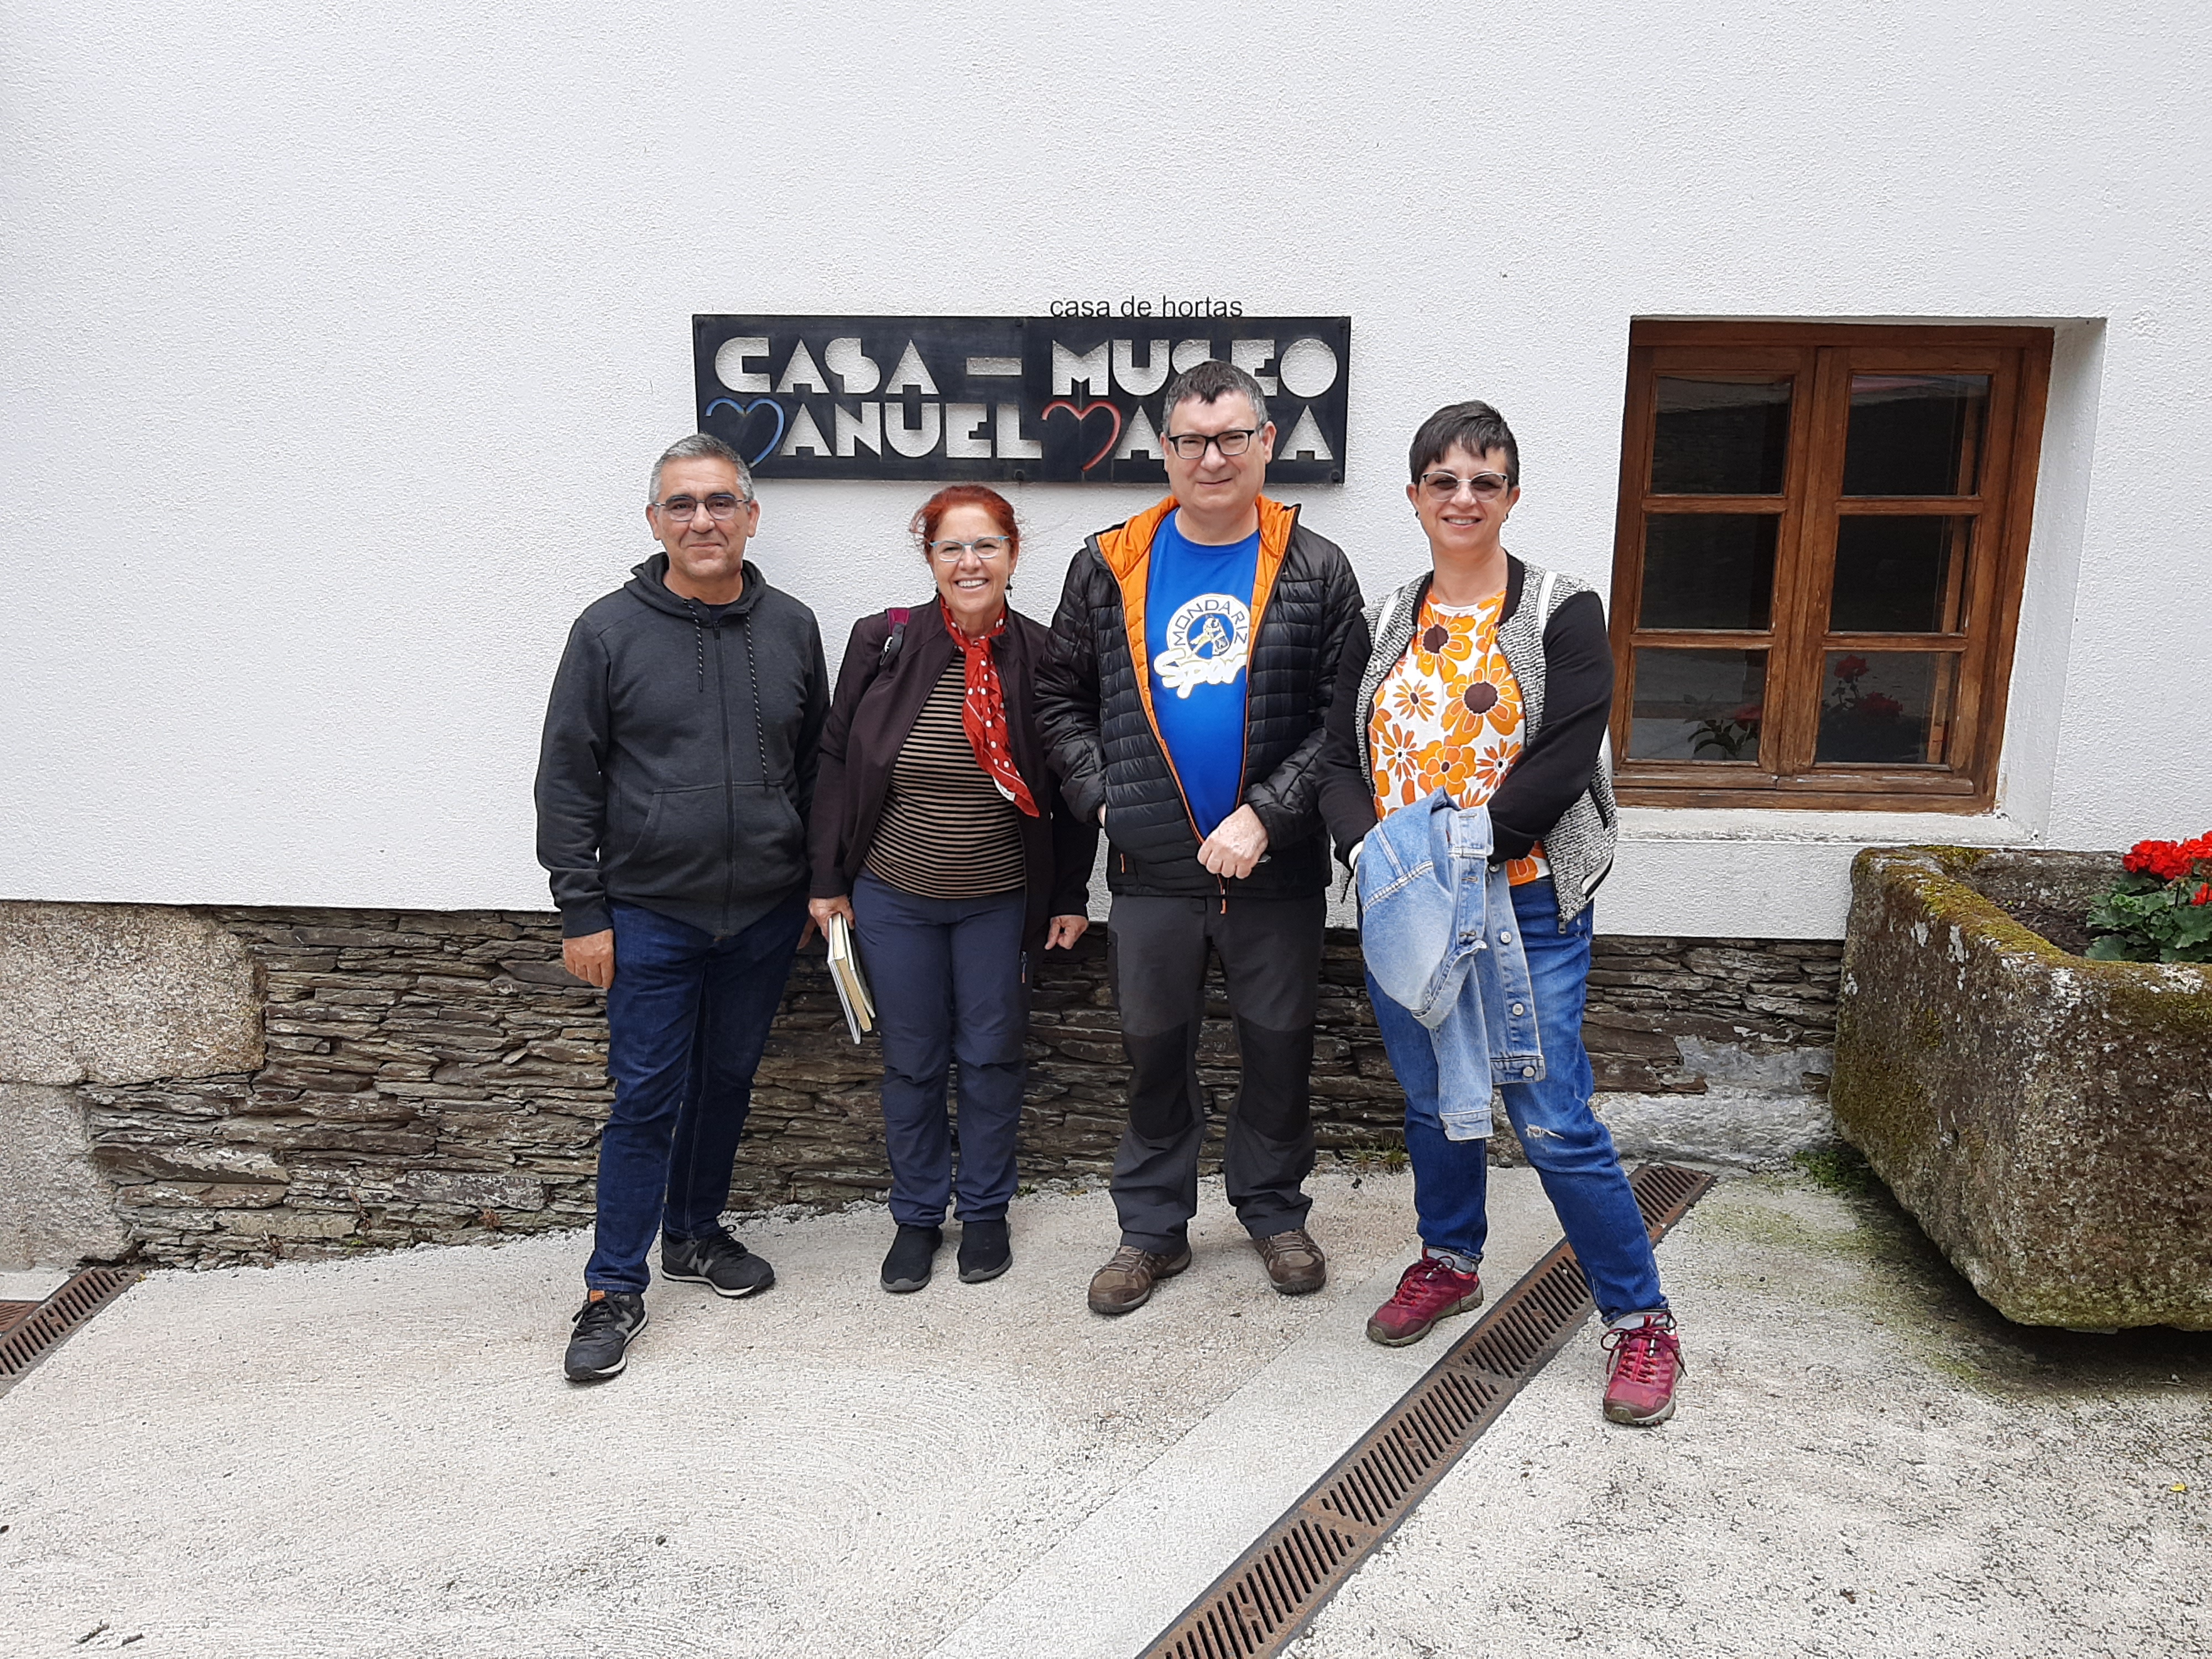 Estes amigos de Guillar (Outeiro) viñeron mostrar aos seus amigos de Vallecas a Casa-Museo Manuel María